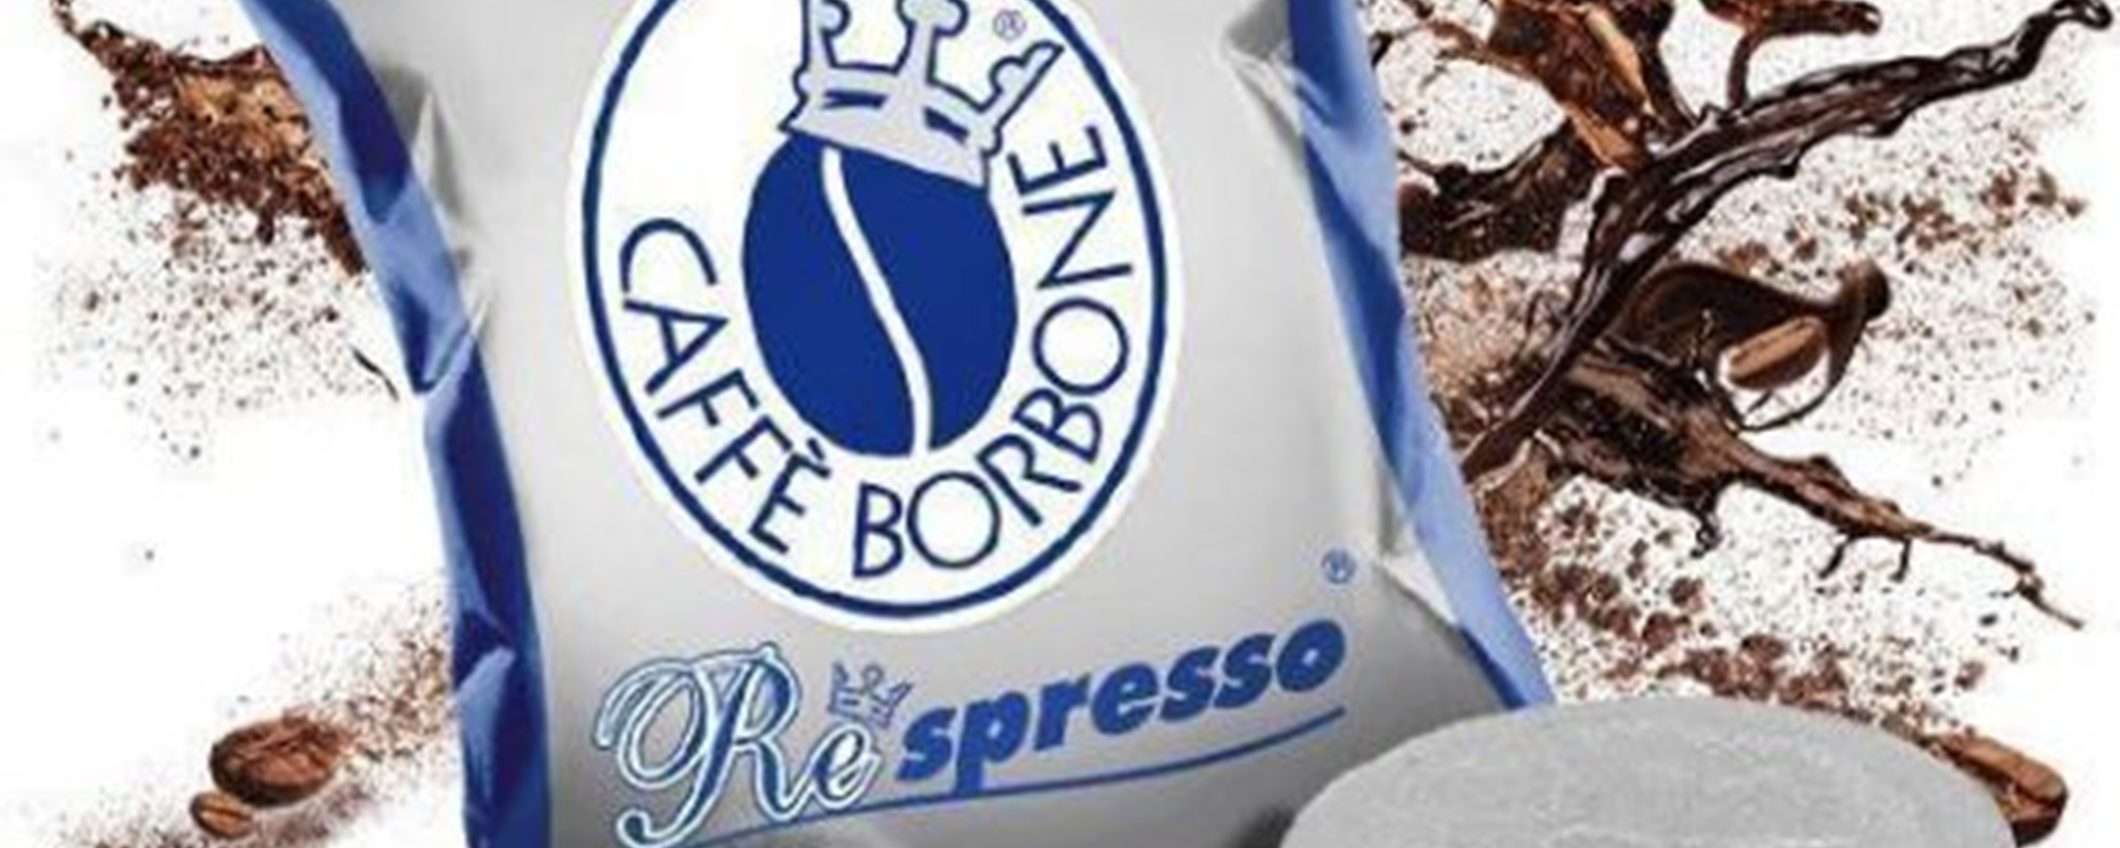 400 cialde caffè Borbone miscela blu per Nespresso a 16cent ciascuna su eBay